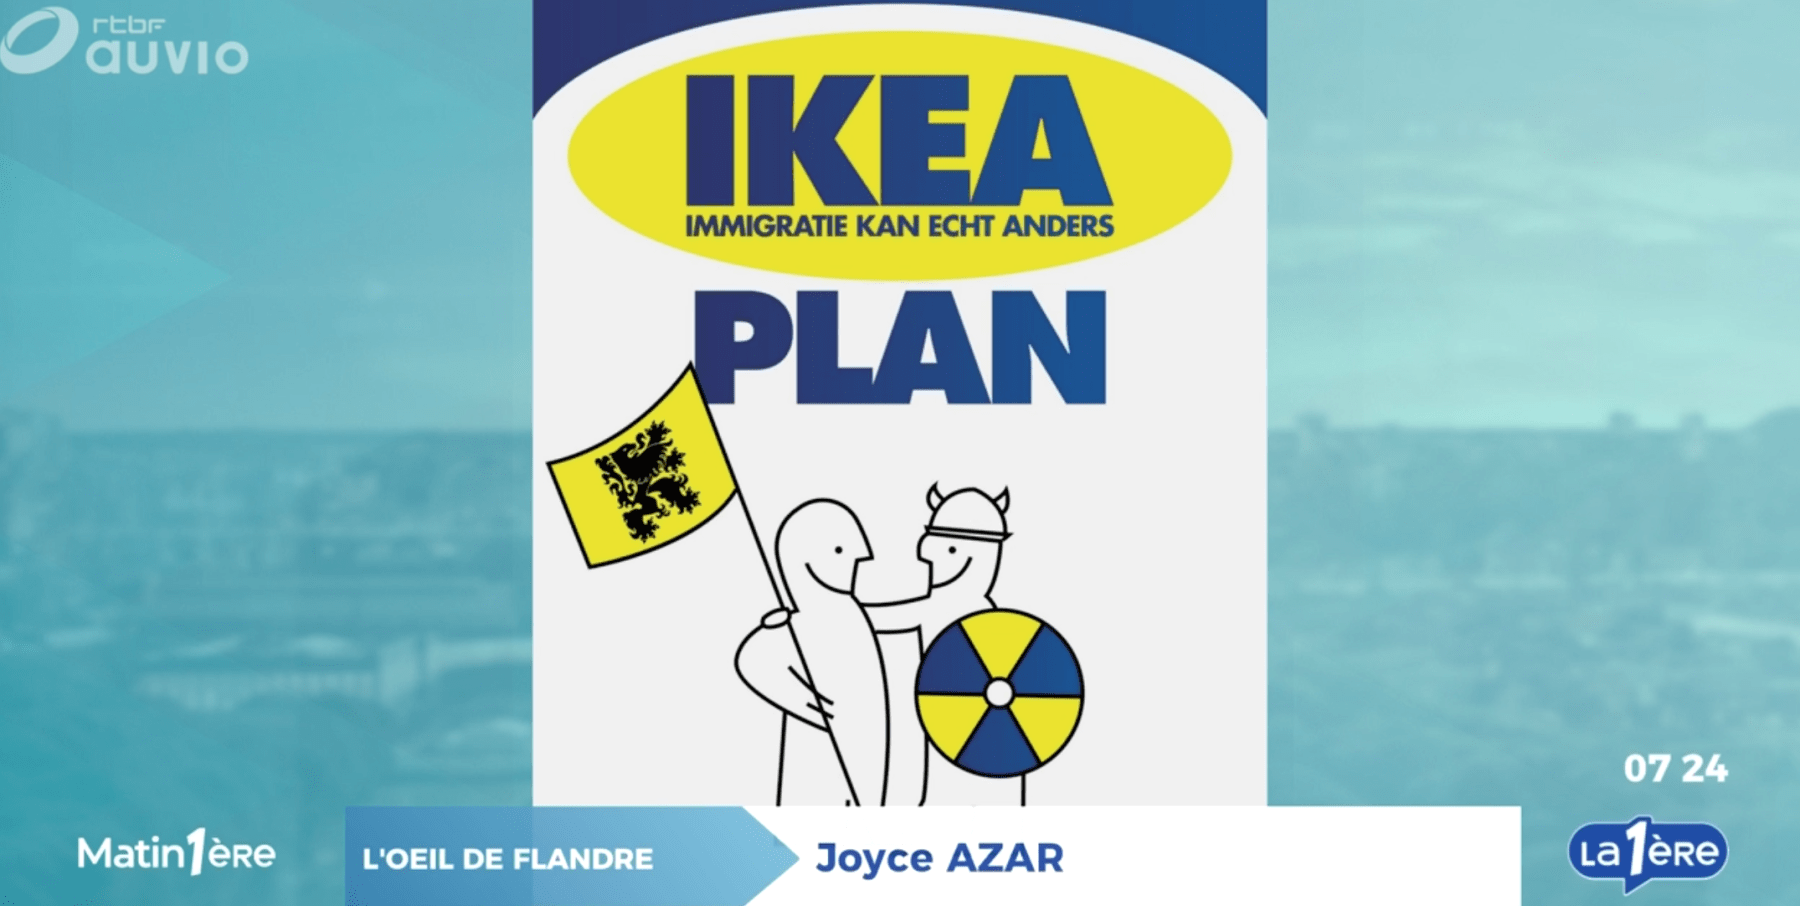 Asile : quand le Belang s’approprie l’identité d’IKEA dans le cadre de sa propagande